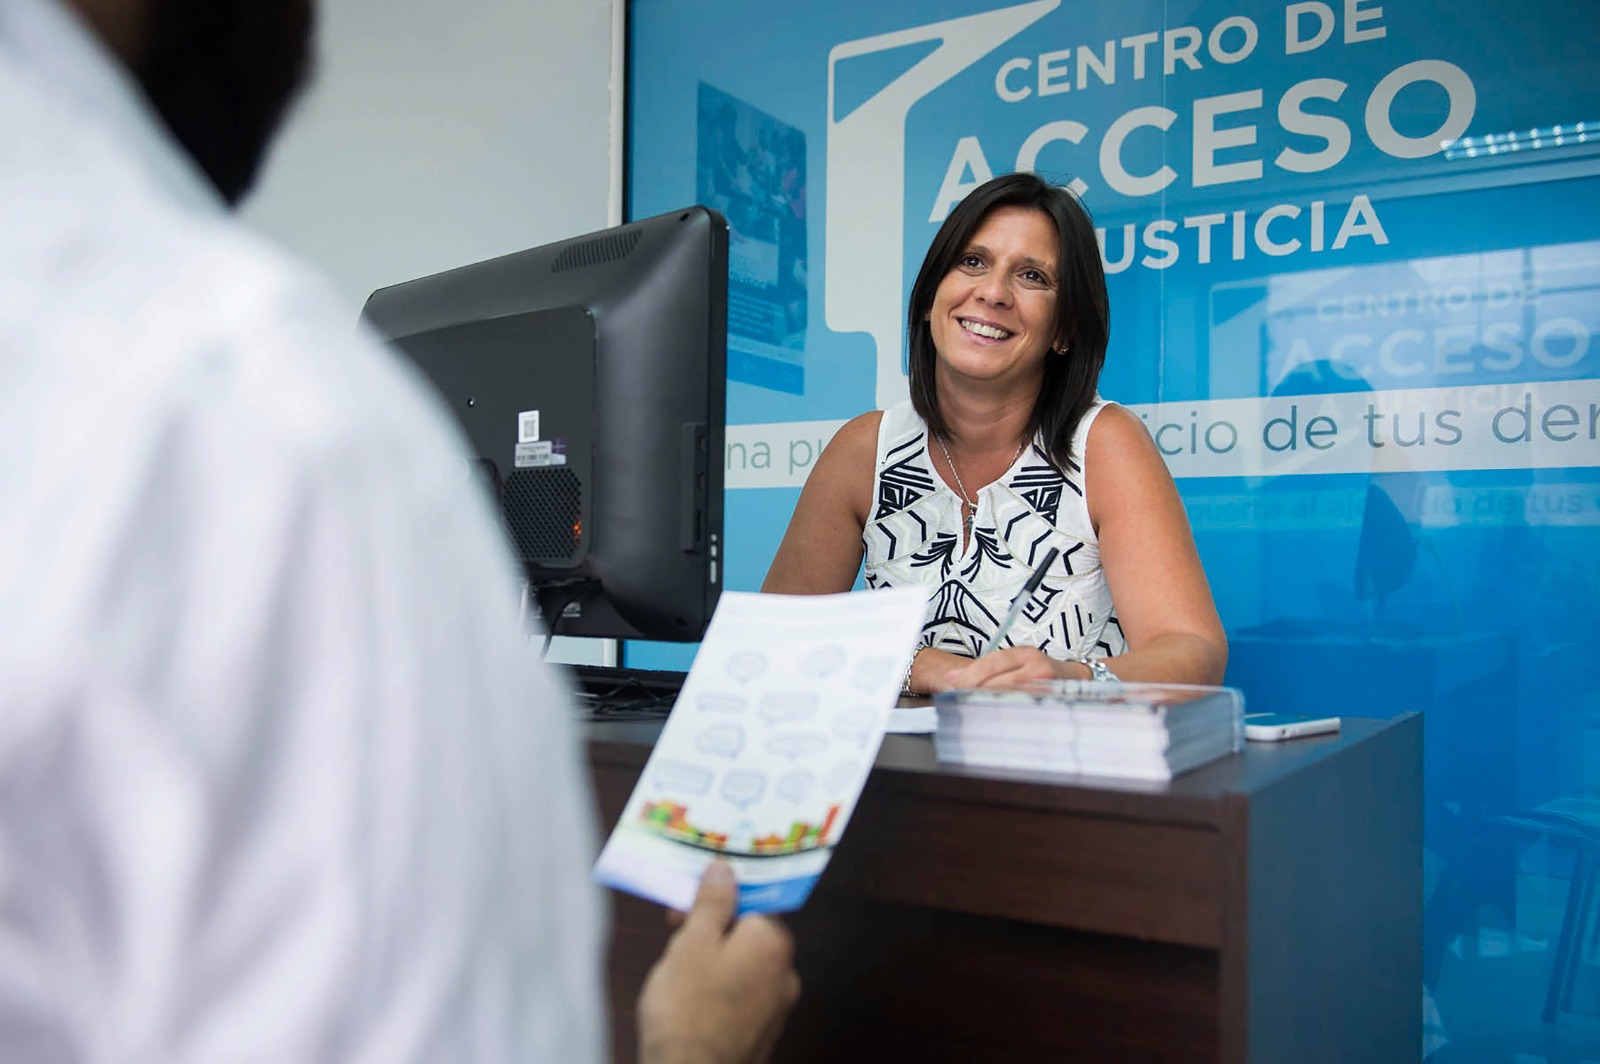 Nuevo Centro de Acceso a la Justicia en Miramar